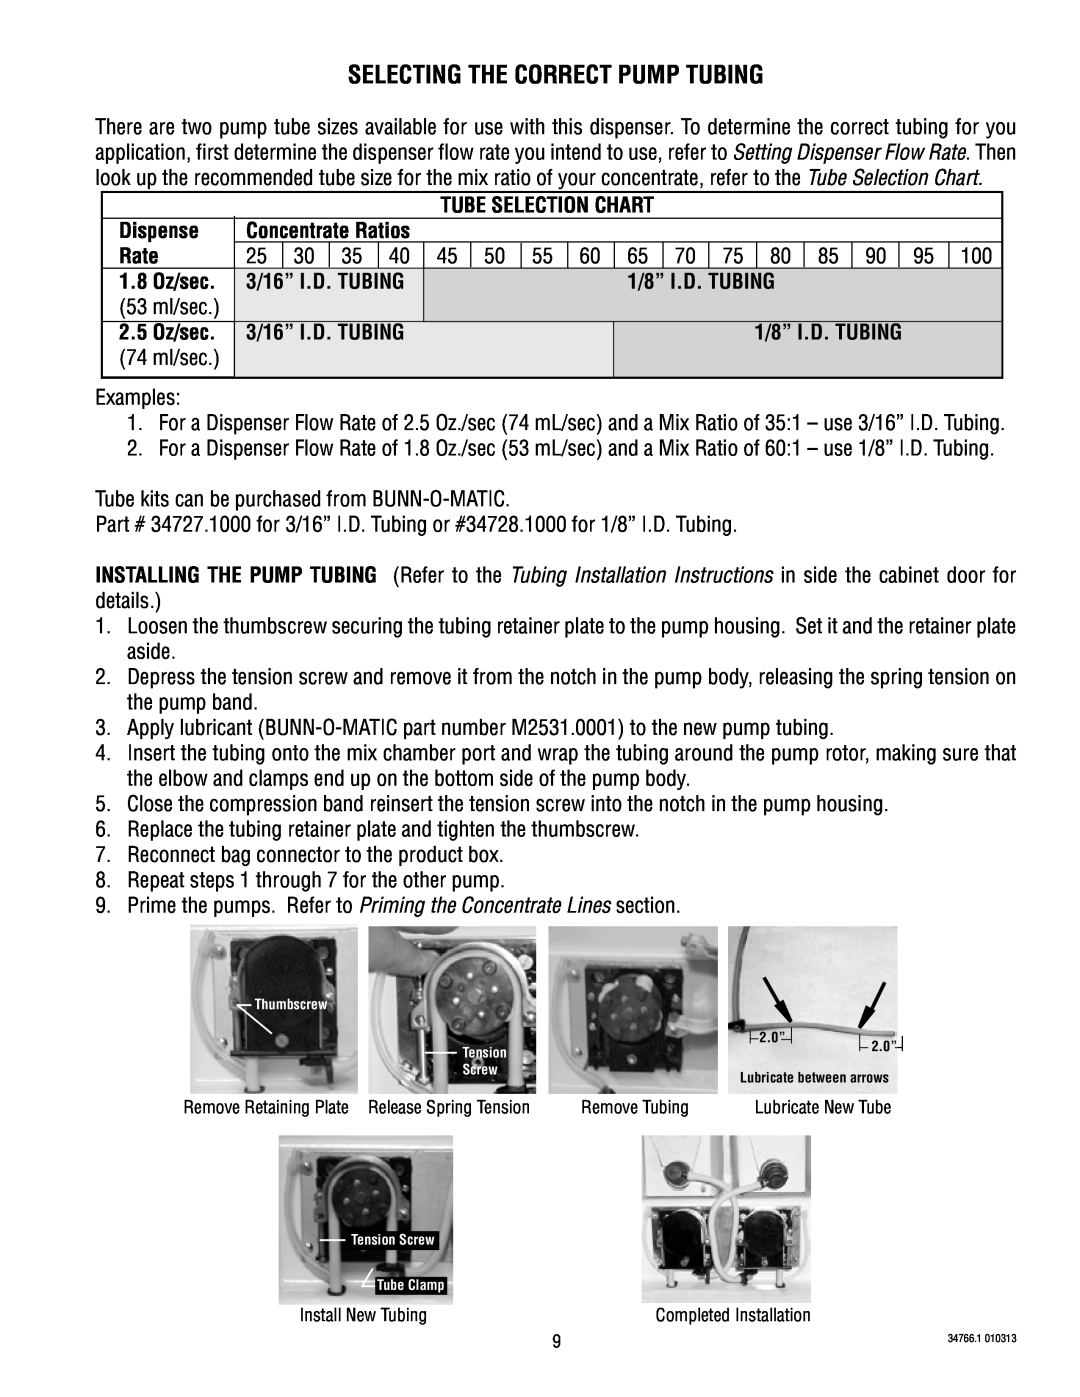 Bunn LCC-2 Selecting The Correct Pump Tubing, Dispense, Rate, 1.8 Oz/sec, 3/16” I.D. TUBING, 1/8” I.D. TUBING, 2.5 Oz/sec 